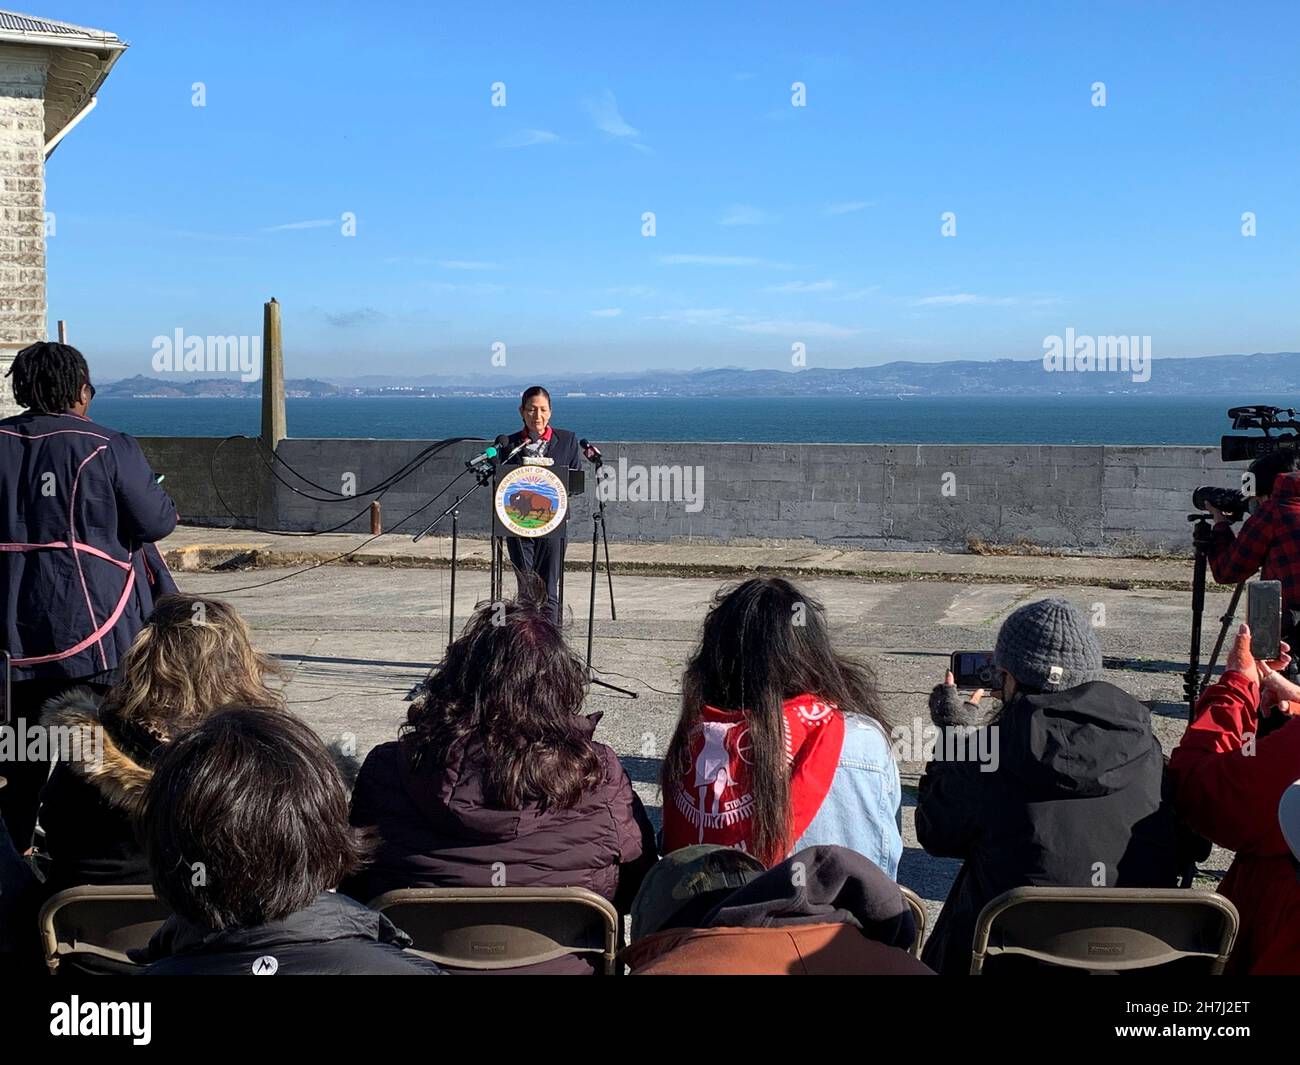 San Francisco, Vereinigte Staaten von Amerika. 20. November 2021. US-Innenminister deb Haaland hält am 20. November 2021 in San Francisco, Kalifornien, eine Rede zur Macht der indigenen Vertretung anlässlich des 52nd. Jahrestages der Besetzung der Insel Alcatraz durch indigene Aktivisten. Der 19-monatige Protest der Indianer im Jahr 1969 forderte die Rückkehr der Insel Alcatraz zum Stamm der Lakota gemäß dem Vertrag von Fort Laramie. Bild: Tami A. Heilemann/USA Interior Department/Alamy Live News Stockfoto